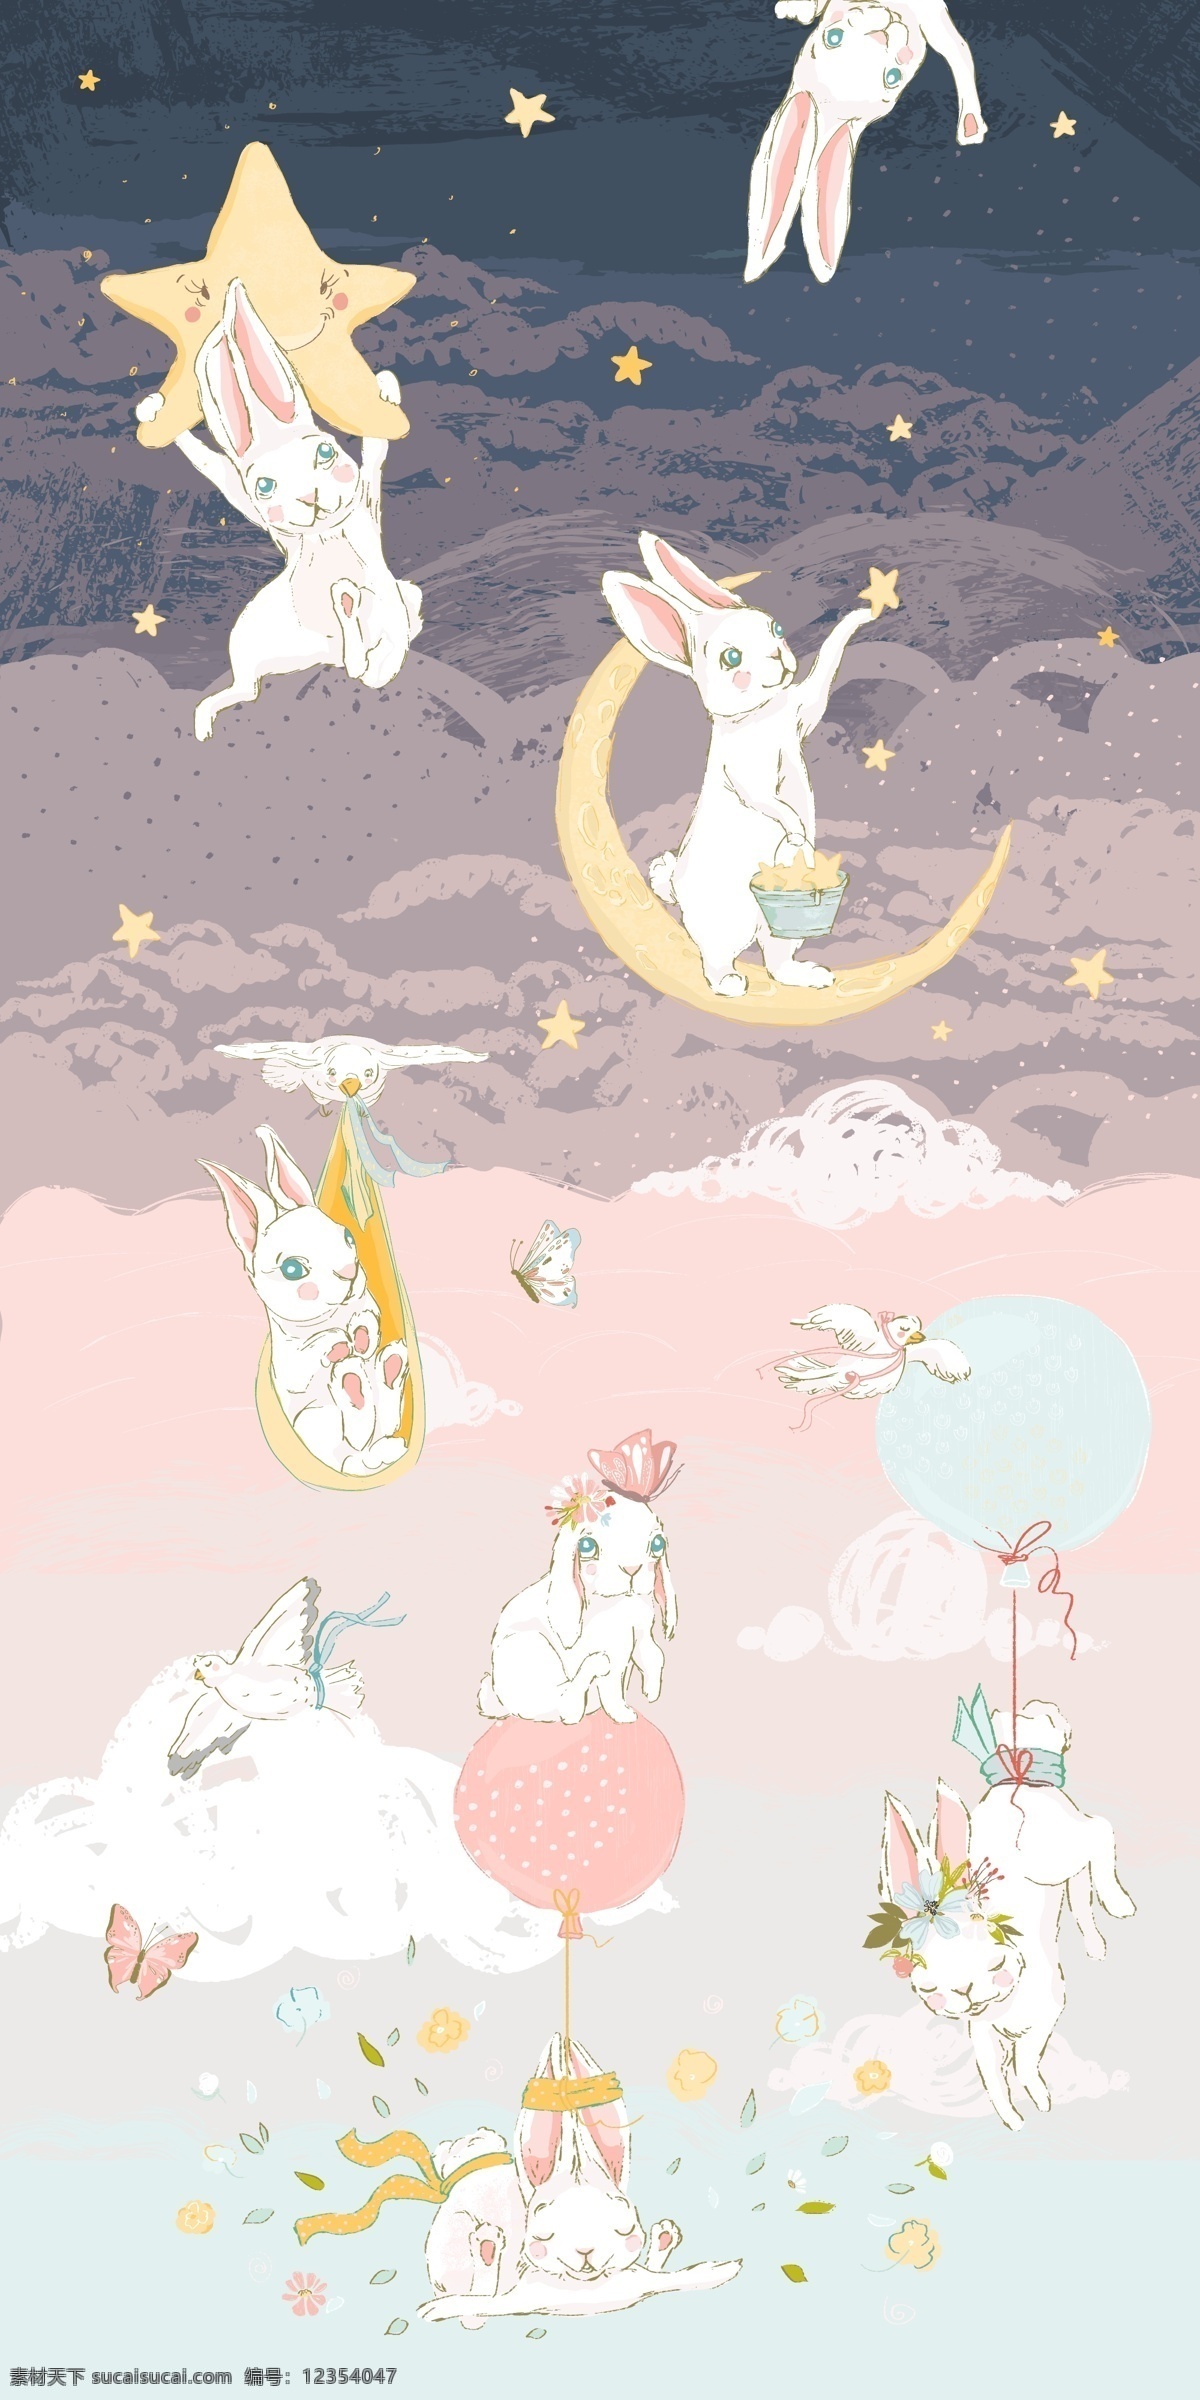 小 动物 卡通 绘画 图案 小清新 兔子 晚安 星空 梦幻 浪漫插画 文化艺术 绘画书法